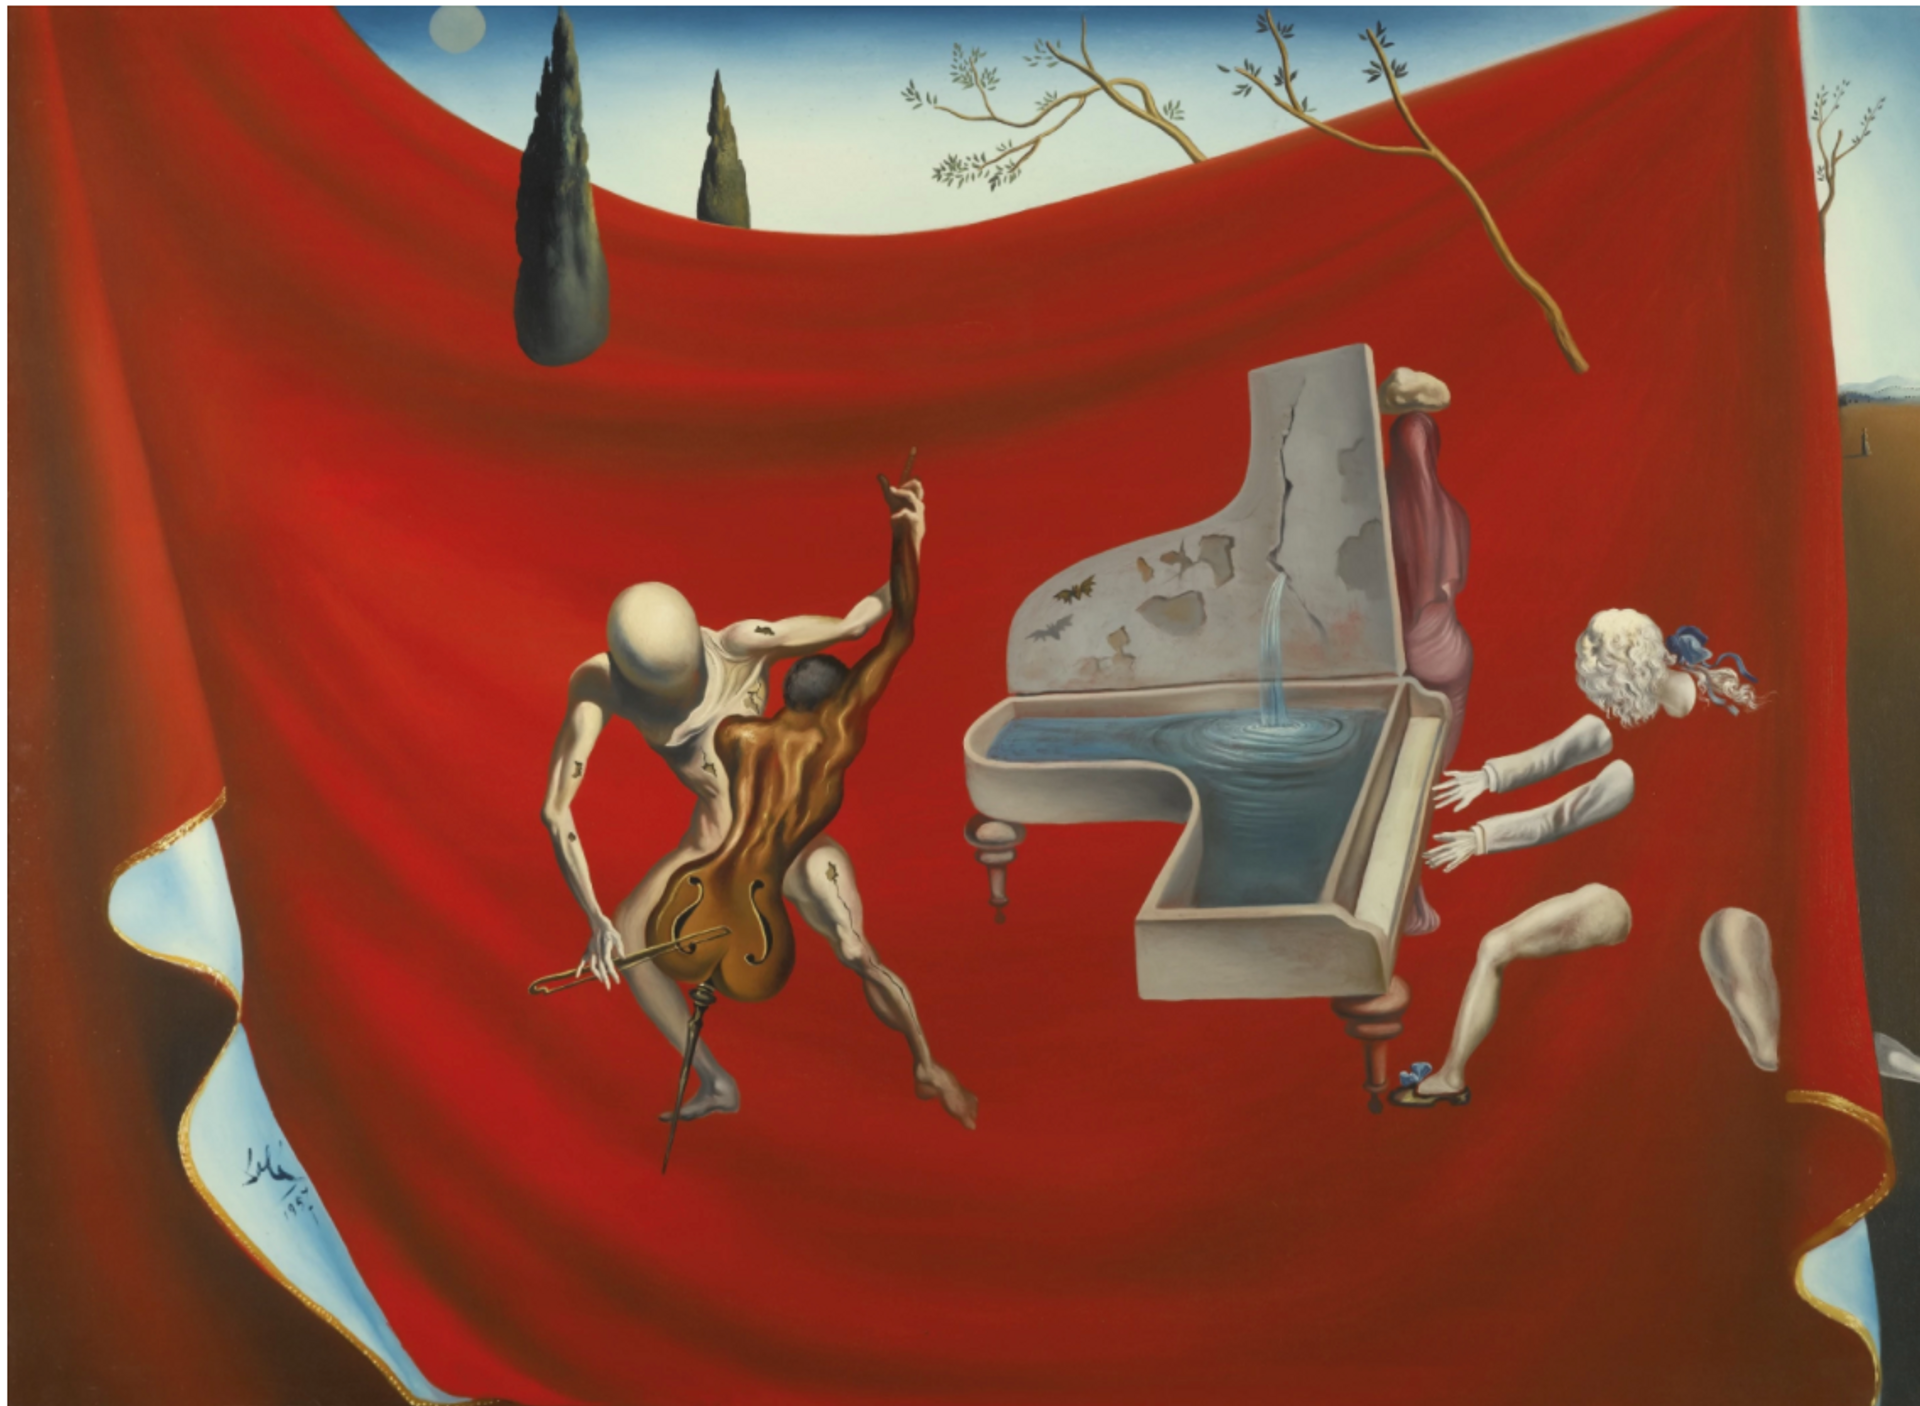 La Musique by Salvador Dalí